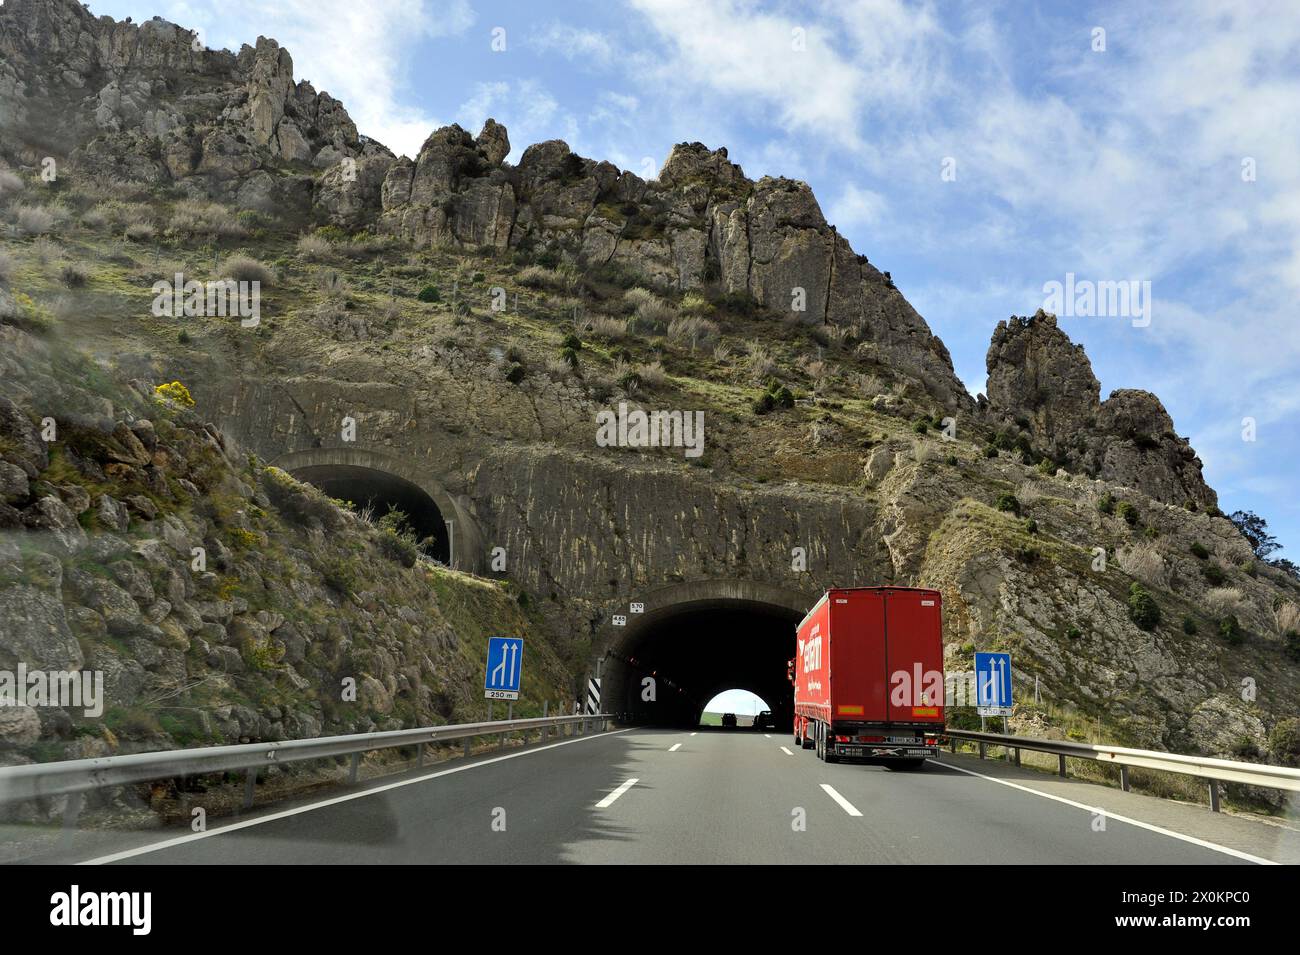 Camion entrant dans un tunnel sur la route en Espagne. Banque D'Images